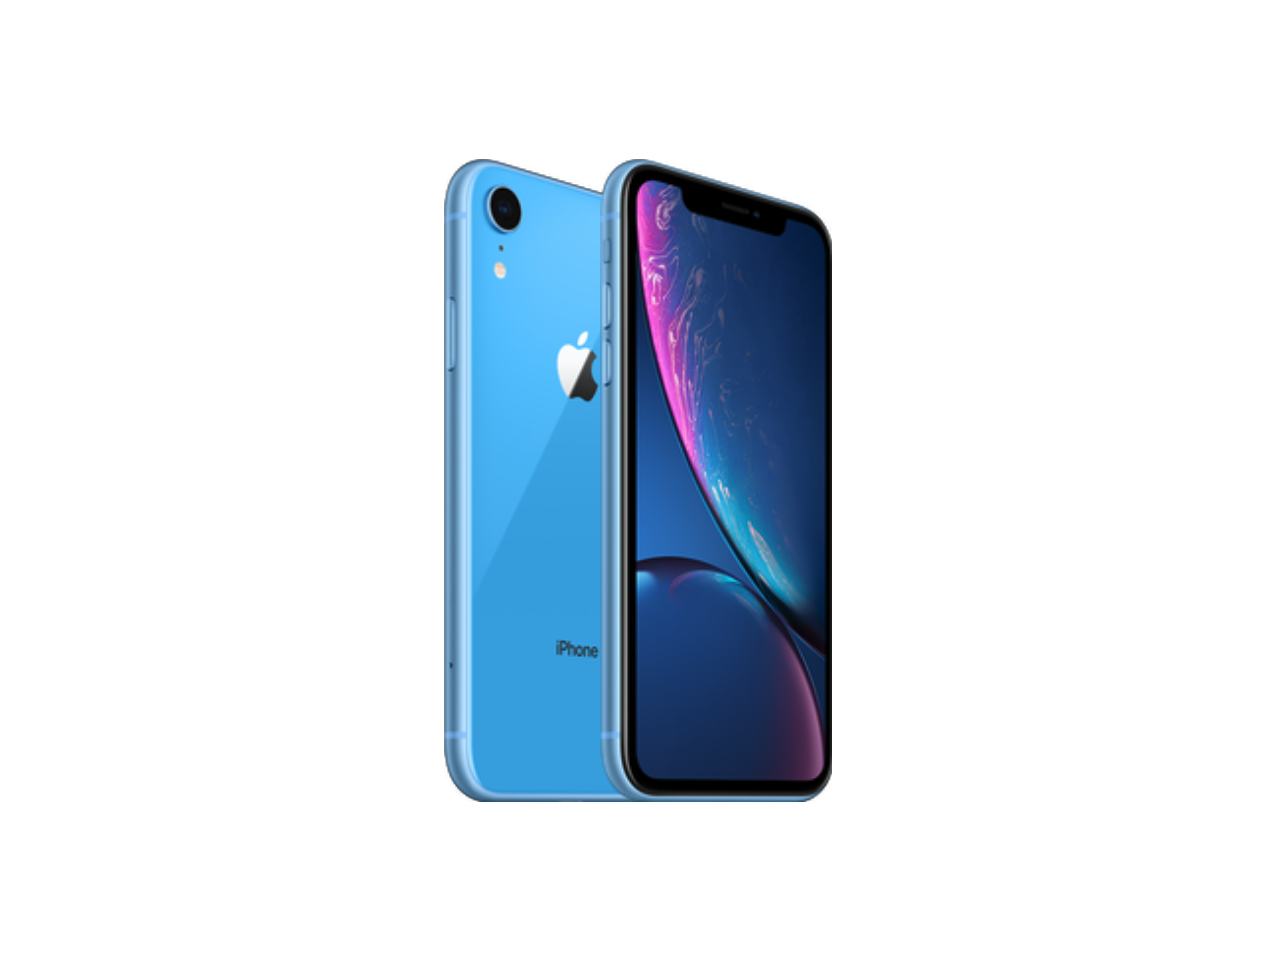 Apple iPhone XR 128gb - Blue - Unlocked - One Year Warranty - Newegg.com